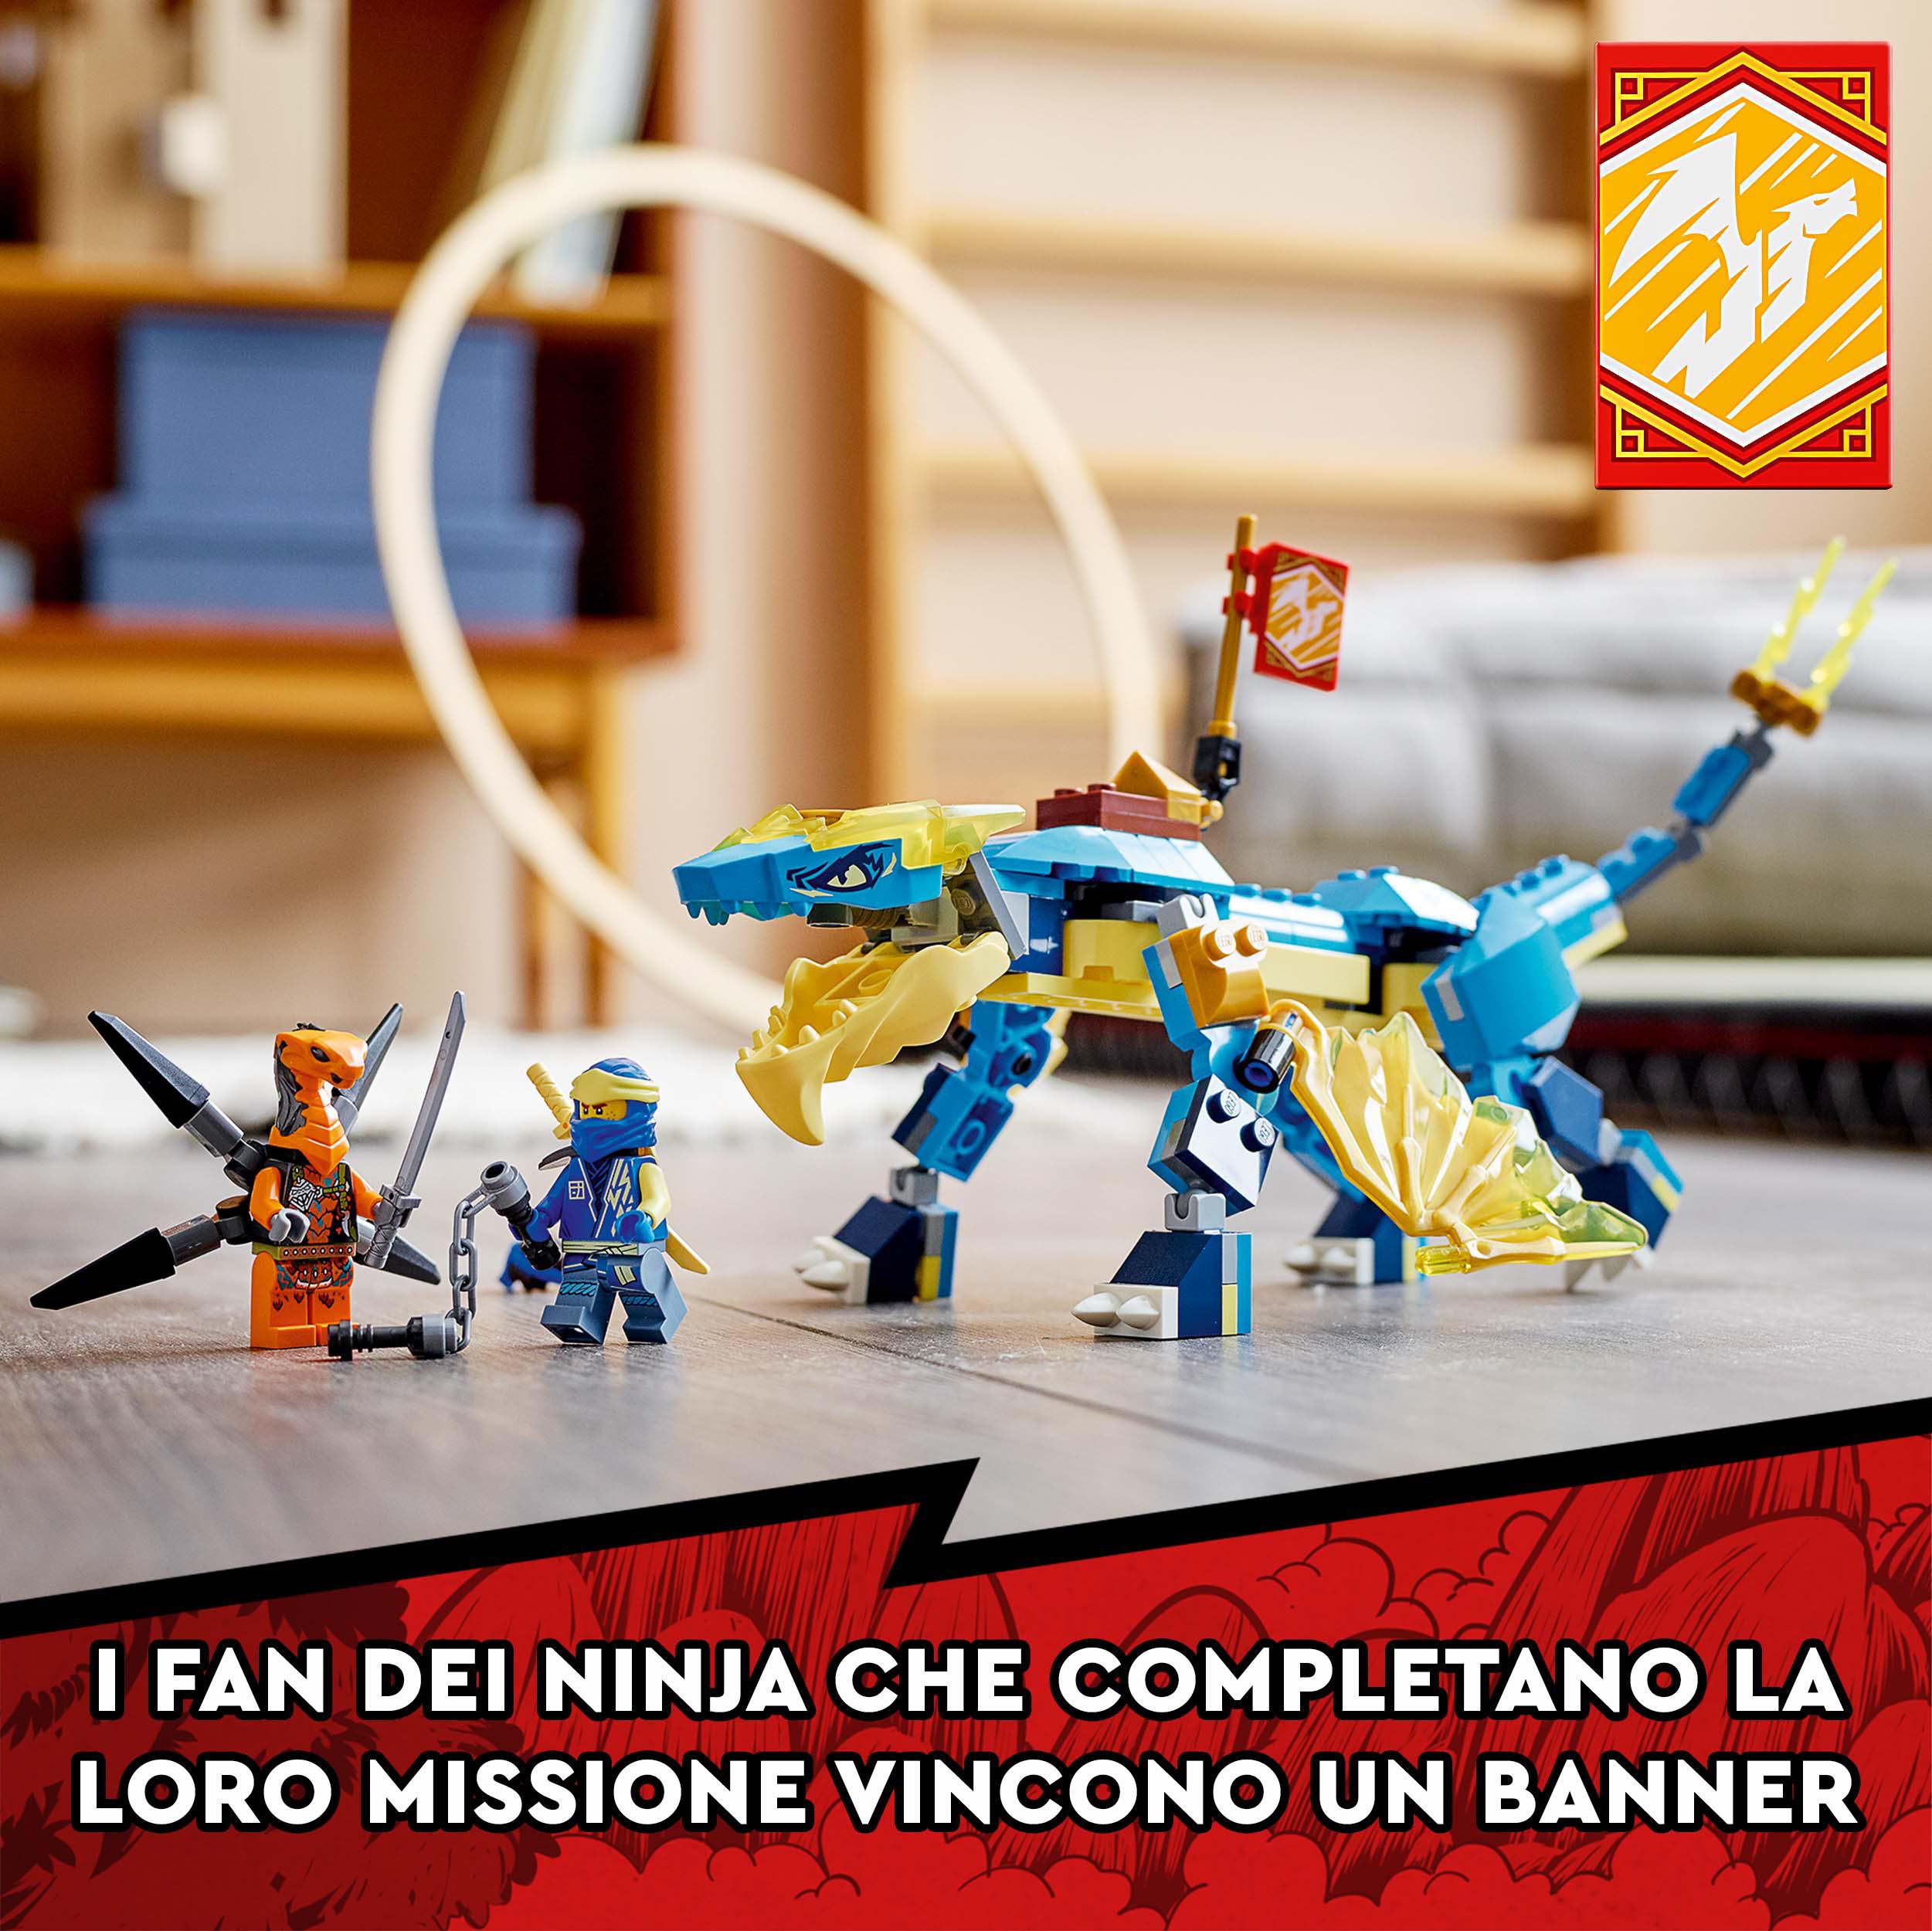 LEGO NINJAGO Dragone del Tuono di Jay - EVOLUTION, Set con Banner da Collezione, 71760, , large